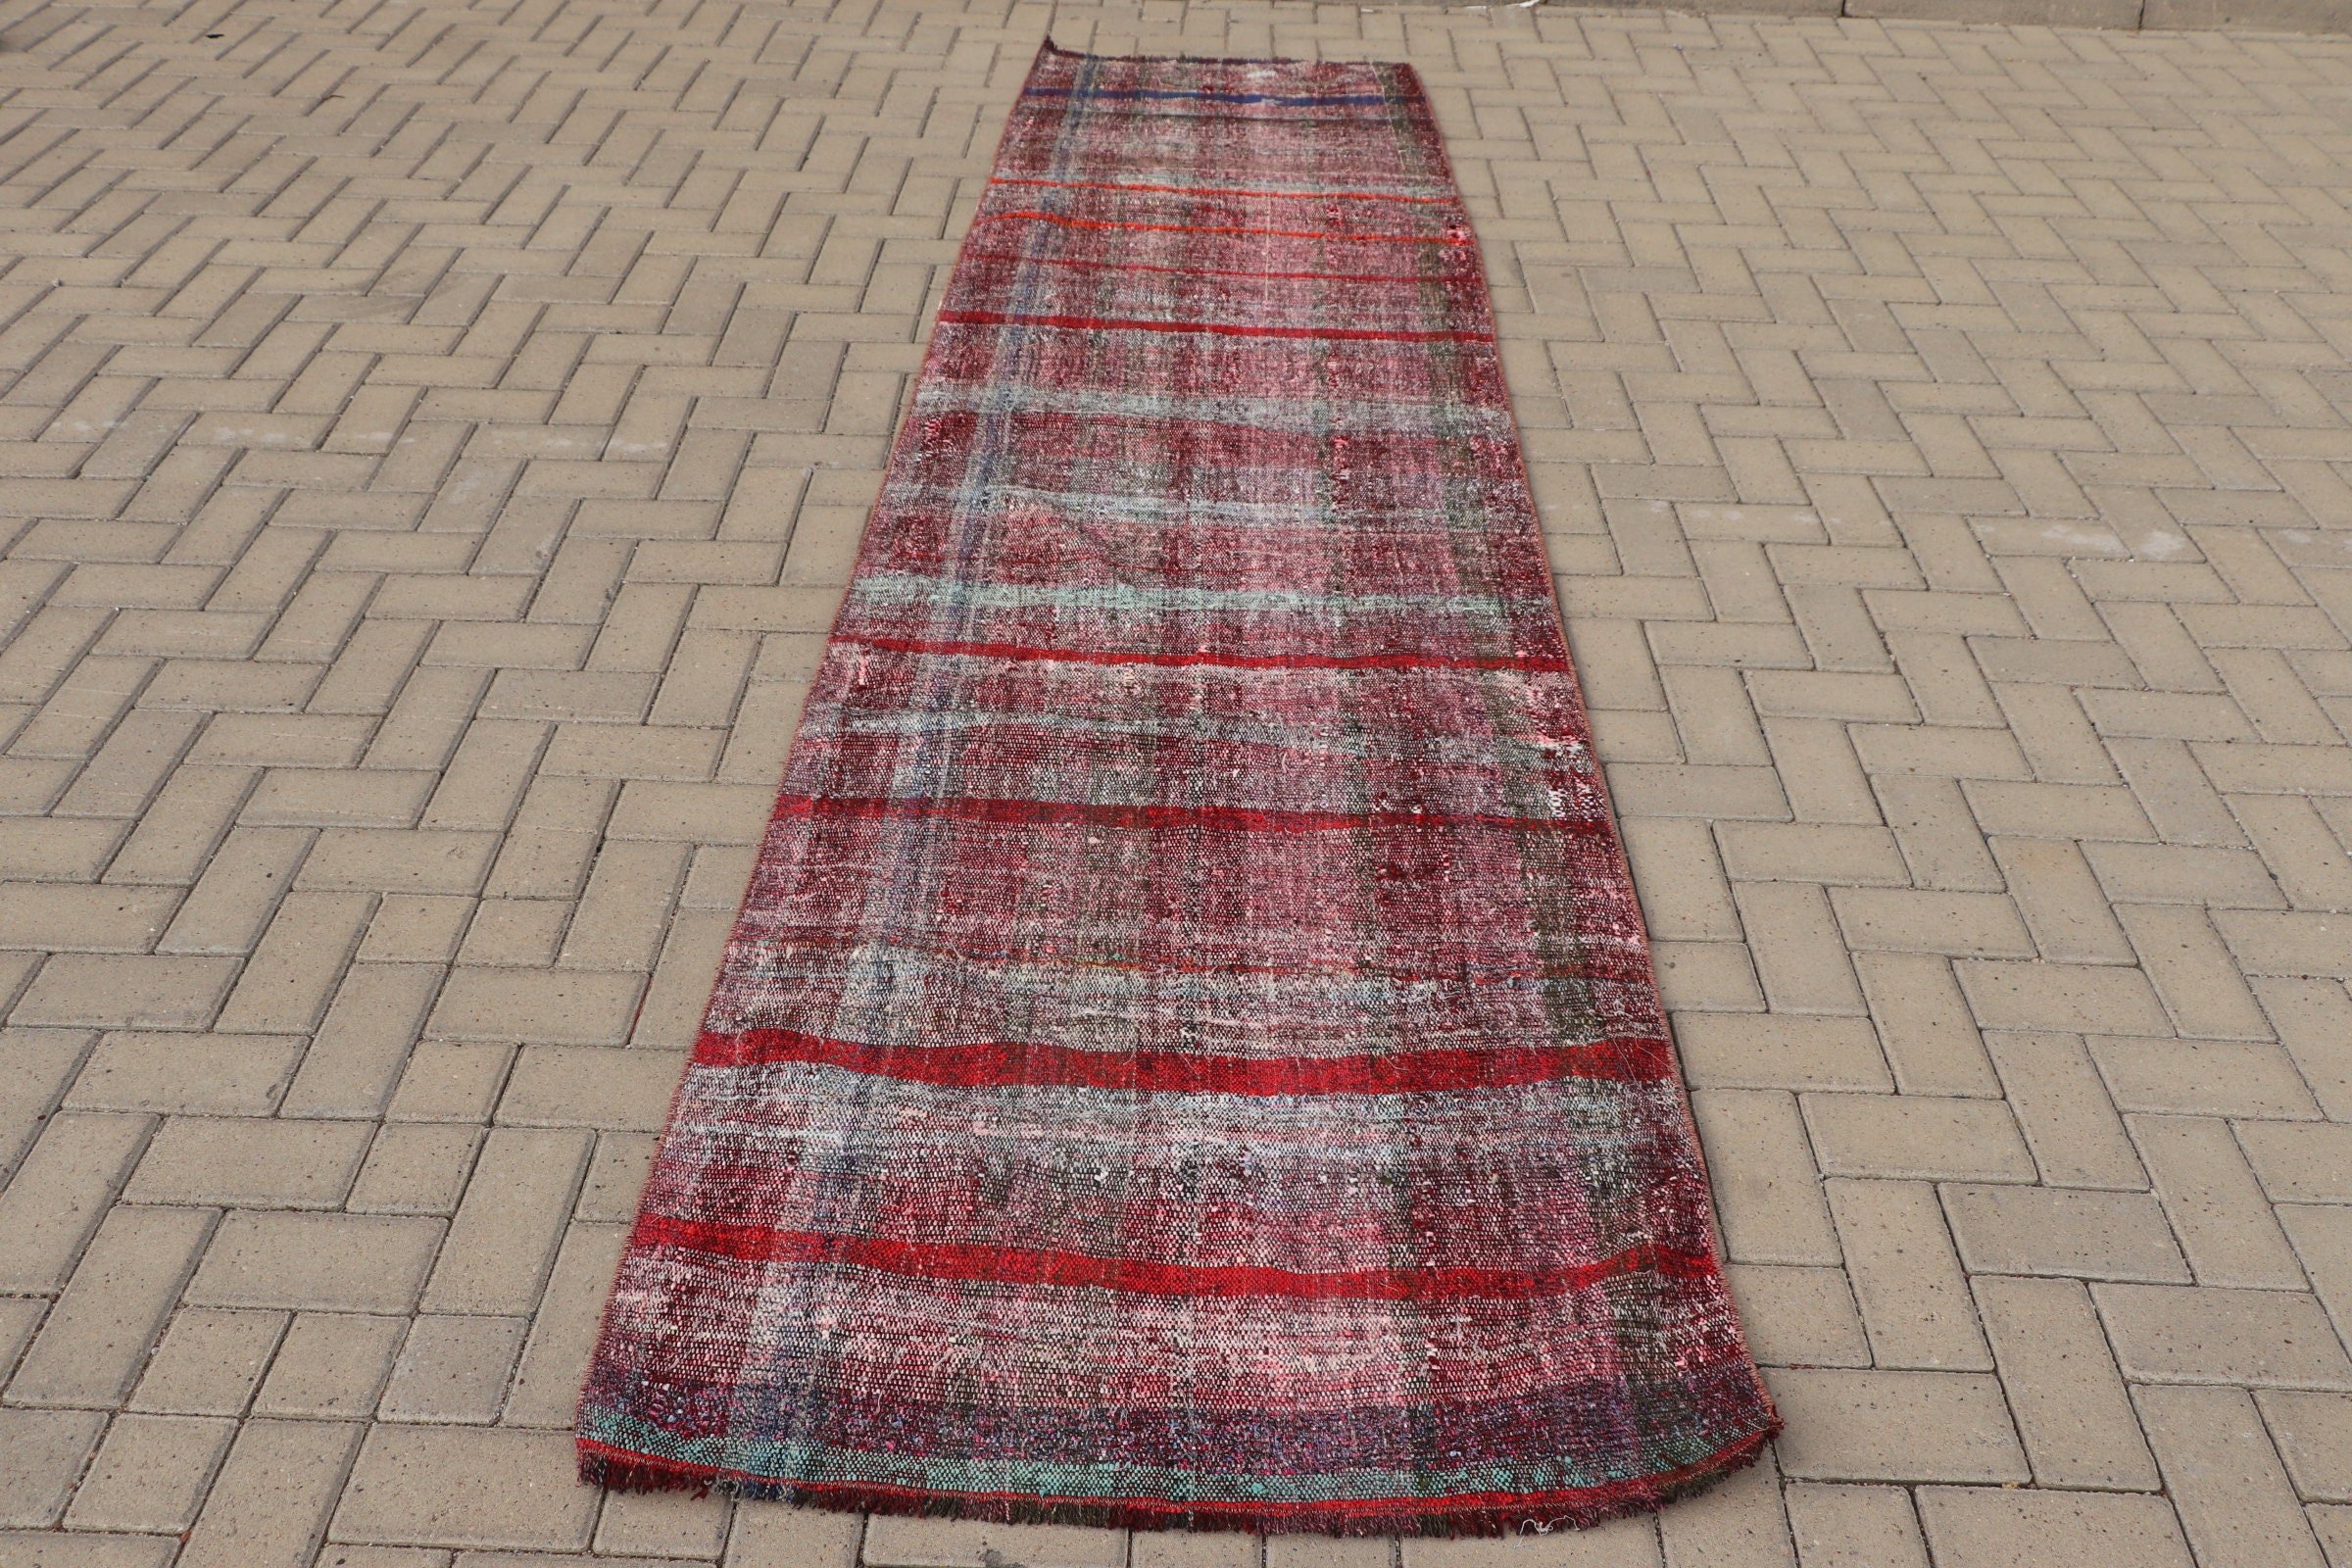 Pink Oushak Rug, Turkish Rugs, 3.1x11.2 ft Runner Rug, Corridor Rug, Vintage Rug, Moroccan Rug, Hallway Rugs, Kilim, Muted Rugs, Floor Rugs